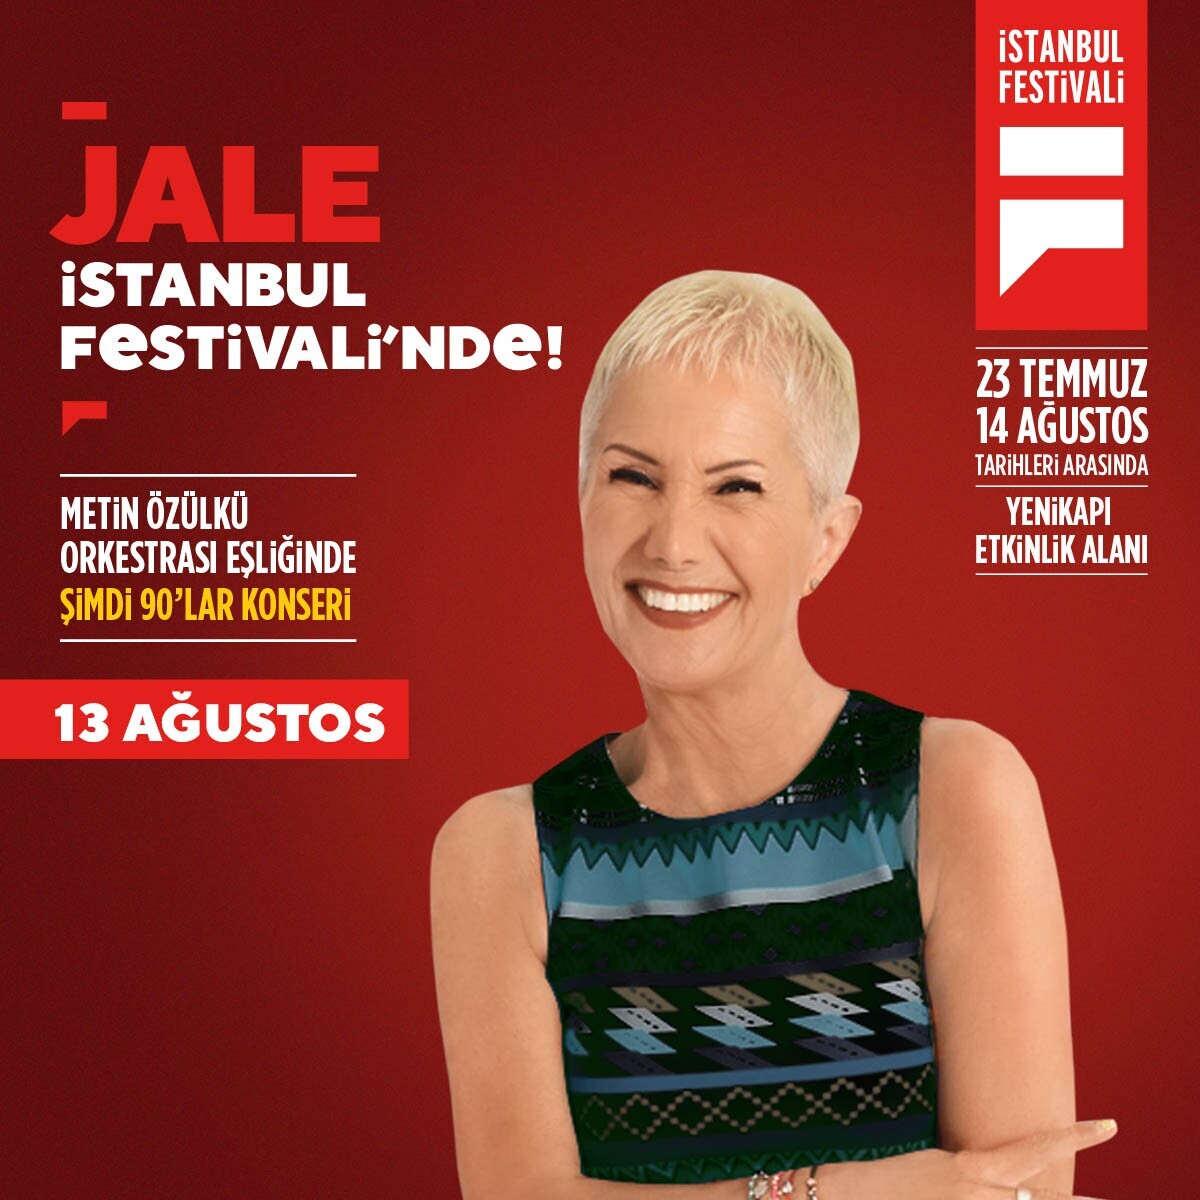 13 Ağustos Cumartesi Şimdi 90'lar Konseri ve Onlarca Aktivite Dahil İstanbul Festivali Giriş Bileti